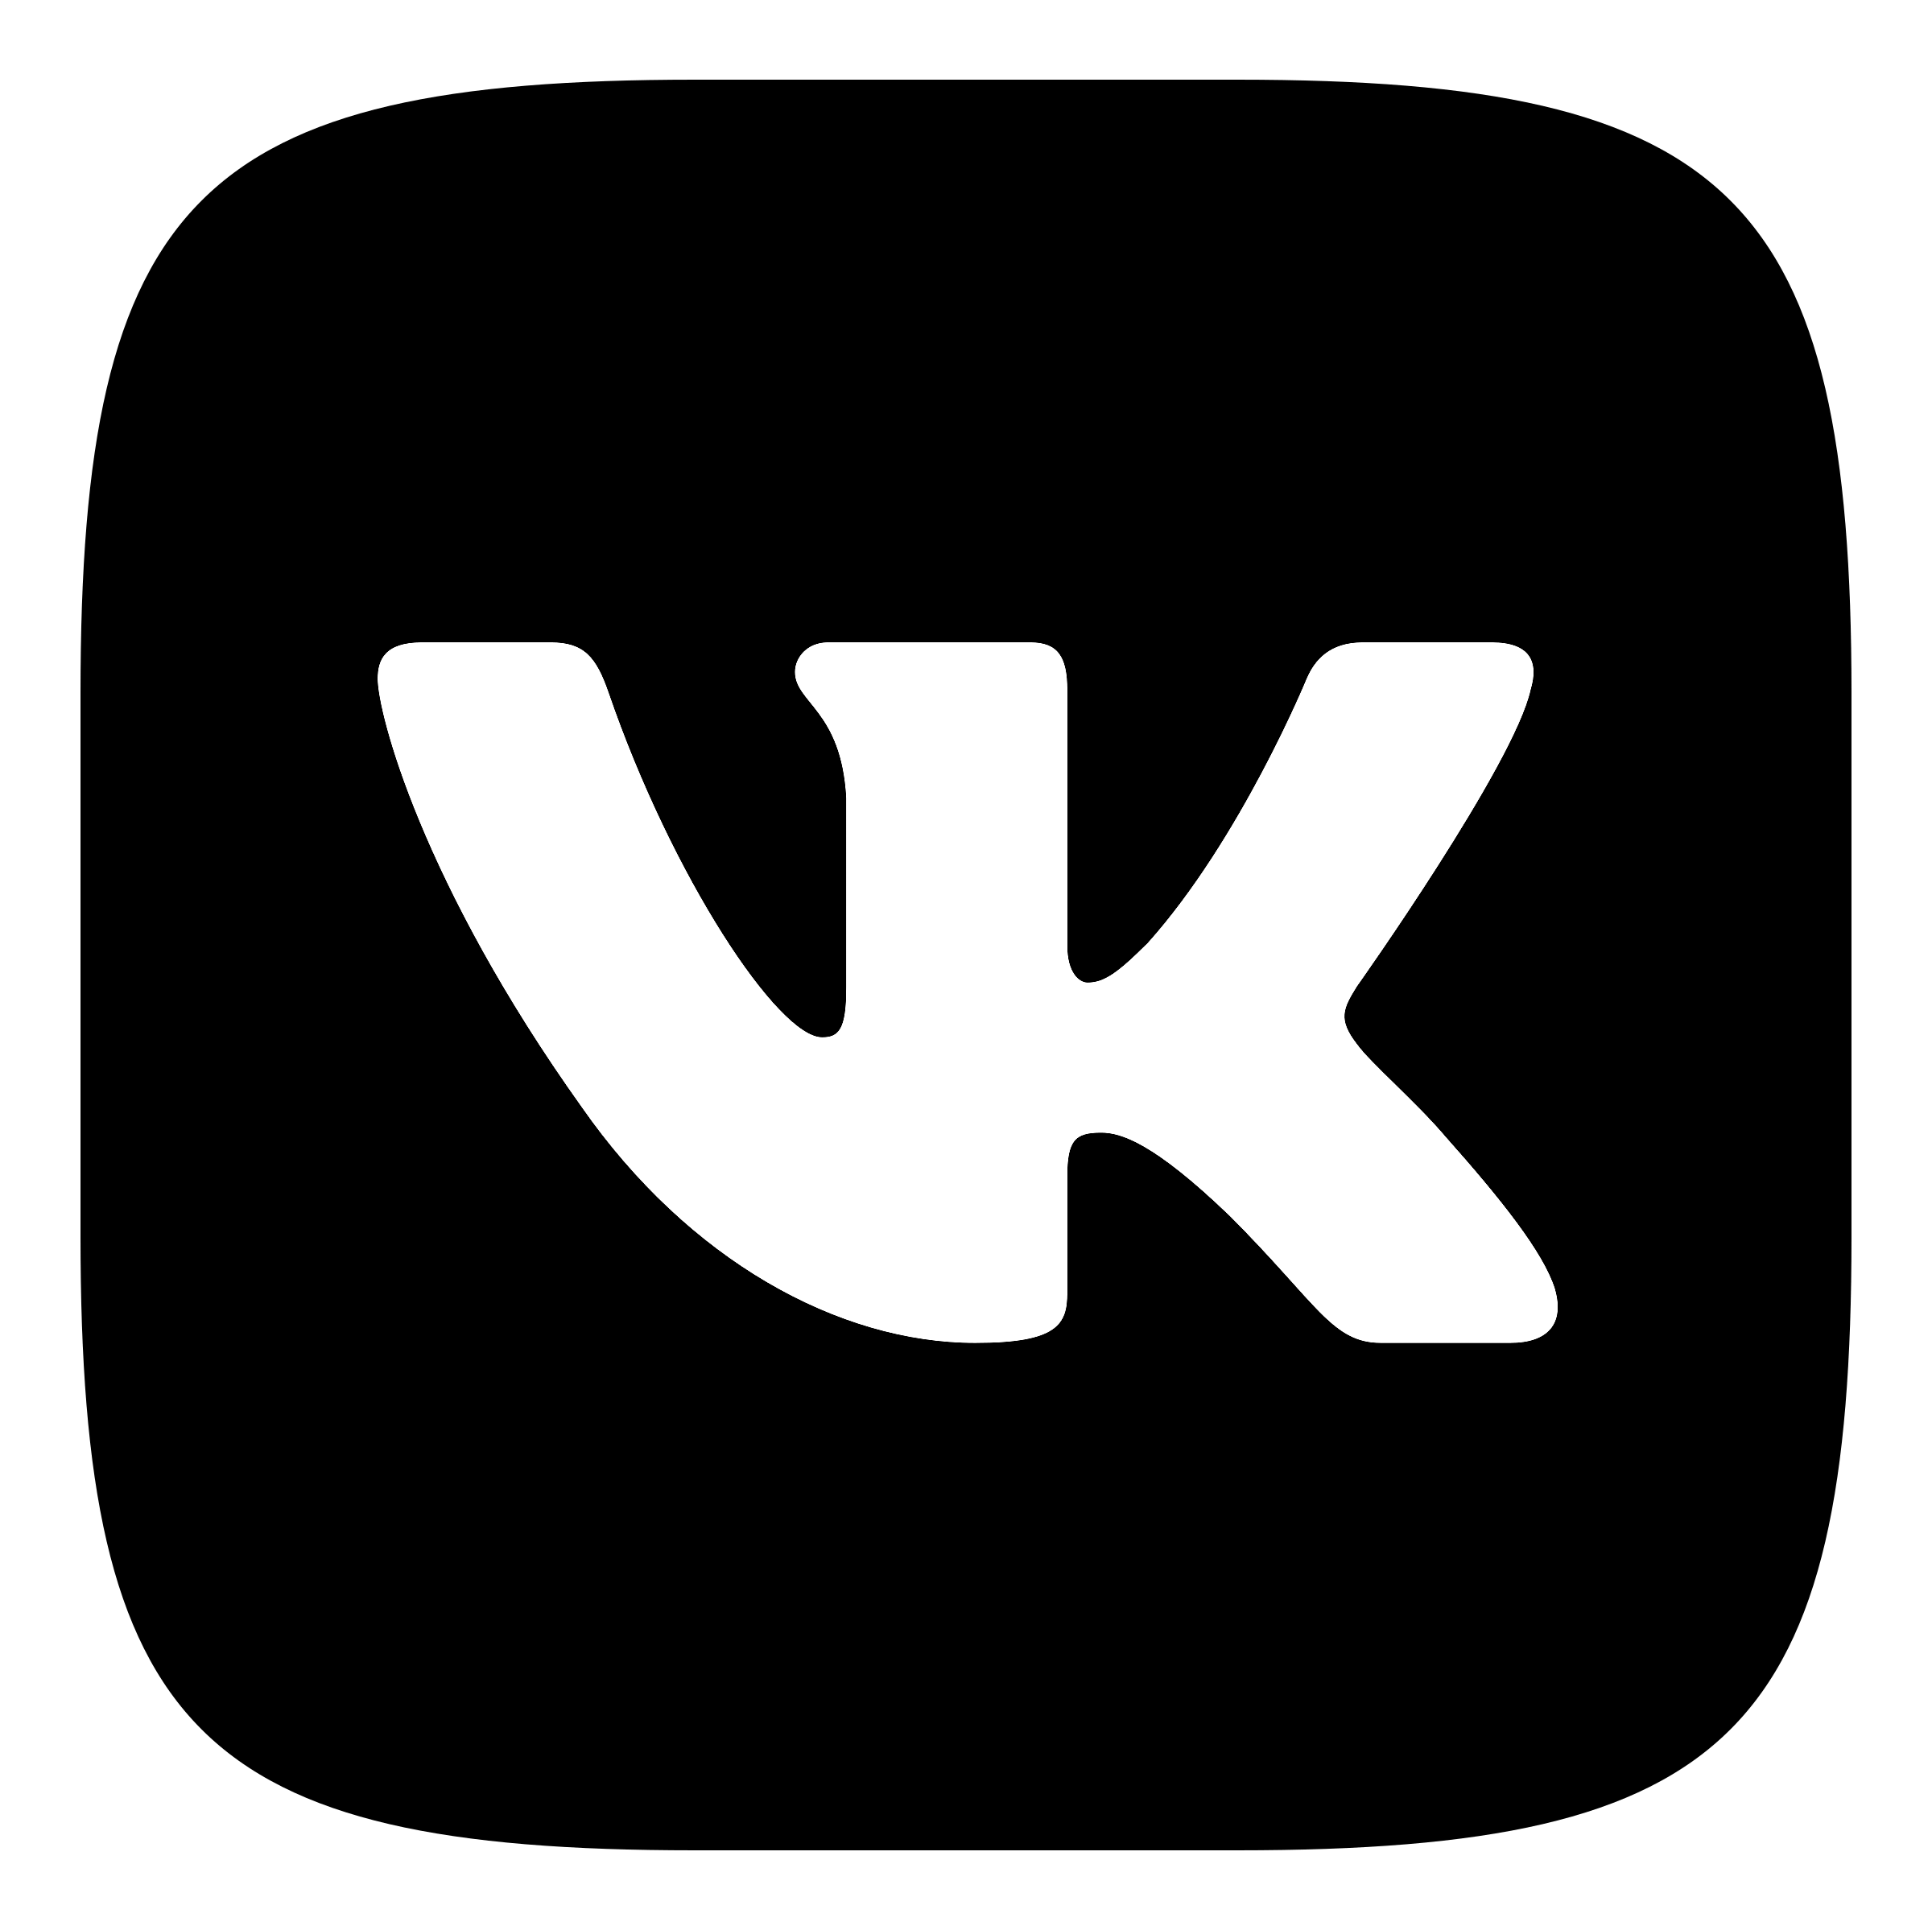 Vk com ozerskvibiraetkomfort. ВКОНТАКТЕ логотип. Значок Вики. Иконка ВК черная. Ык.